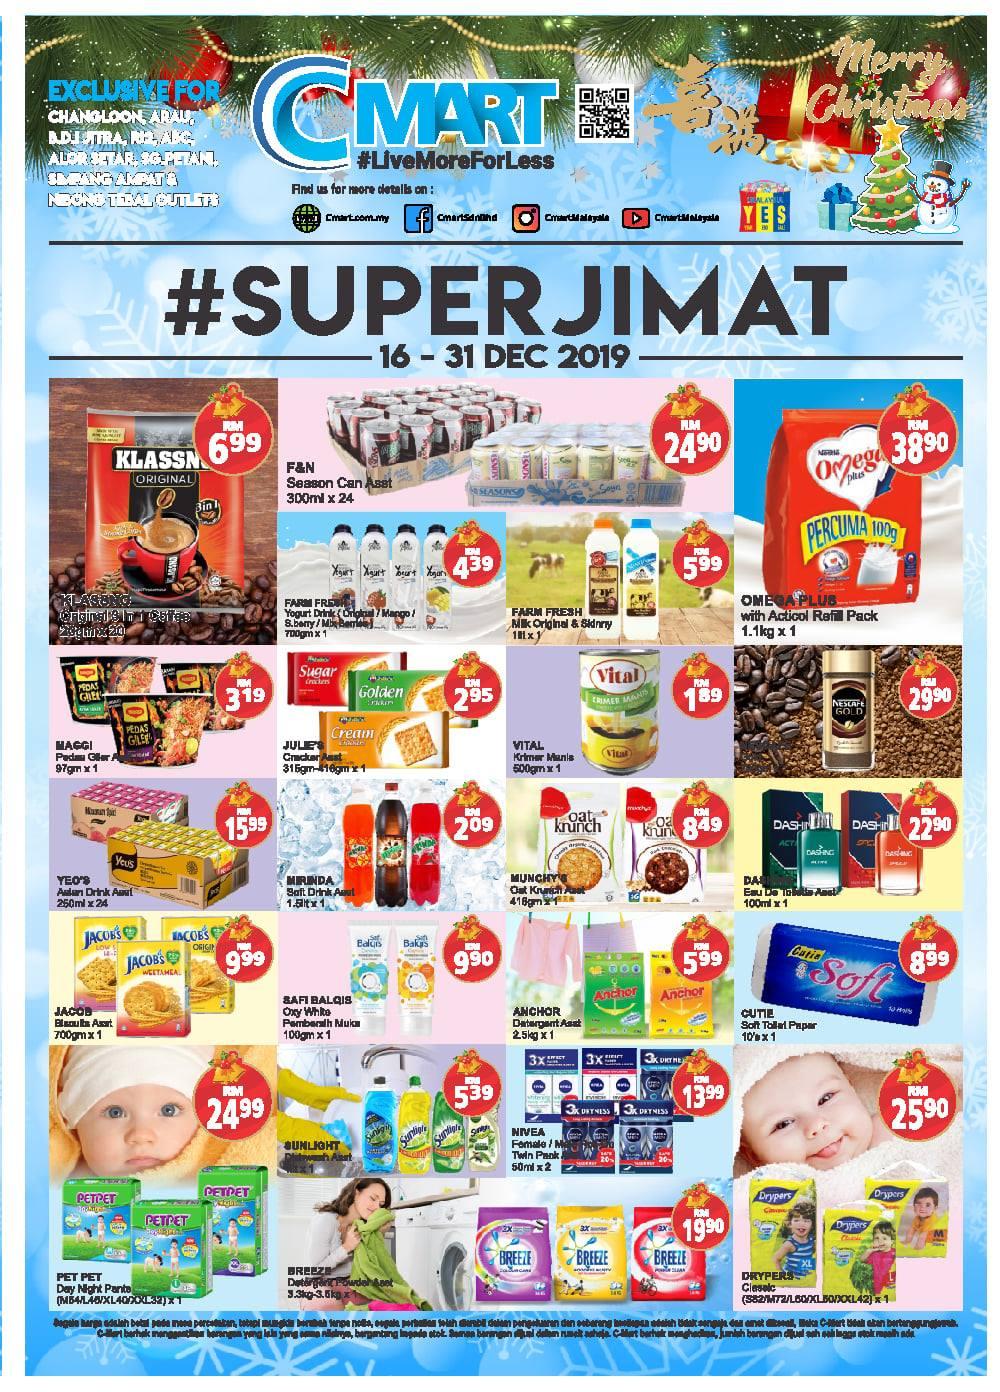 C-MART Super Jimat Promotion (16 December 2019 - 31 December 2019)